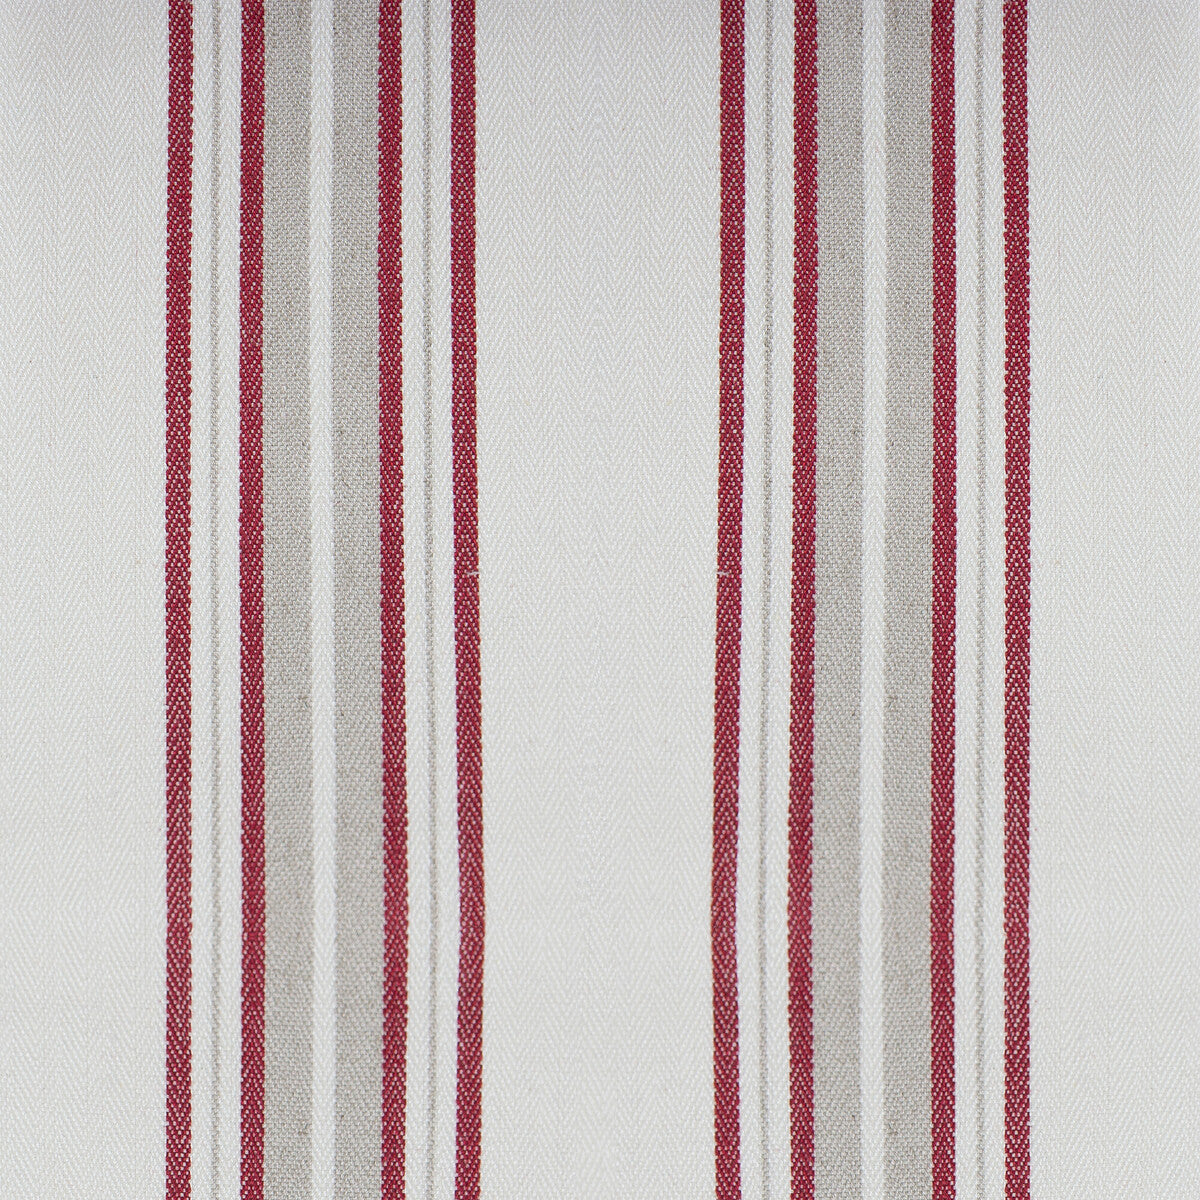 Nueva York fabric in rojo color - pattern GDT5573.003.0 - by Gaston y Daniela in the Gaston Luis Bustamante collection